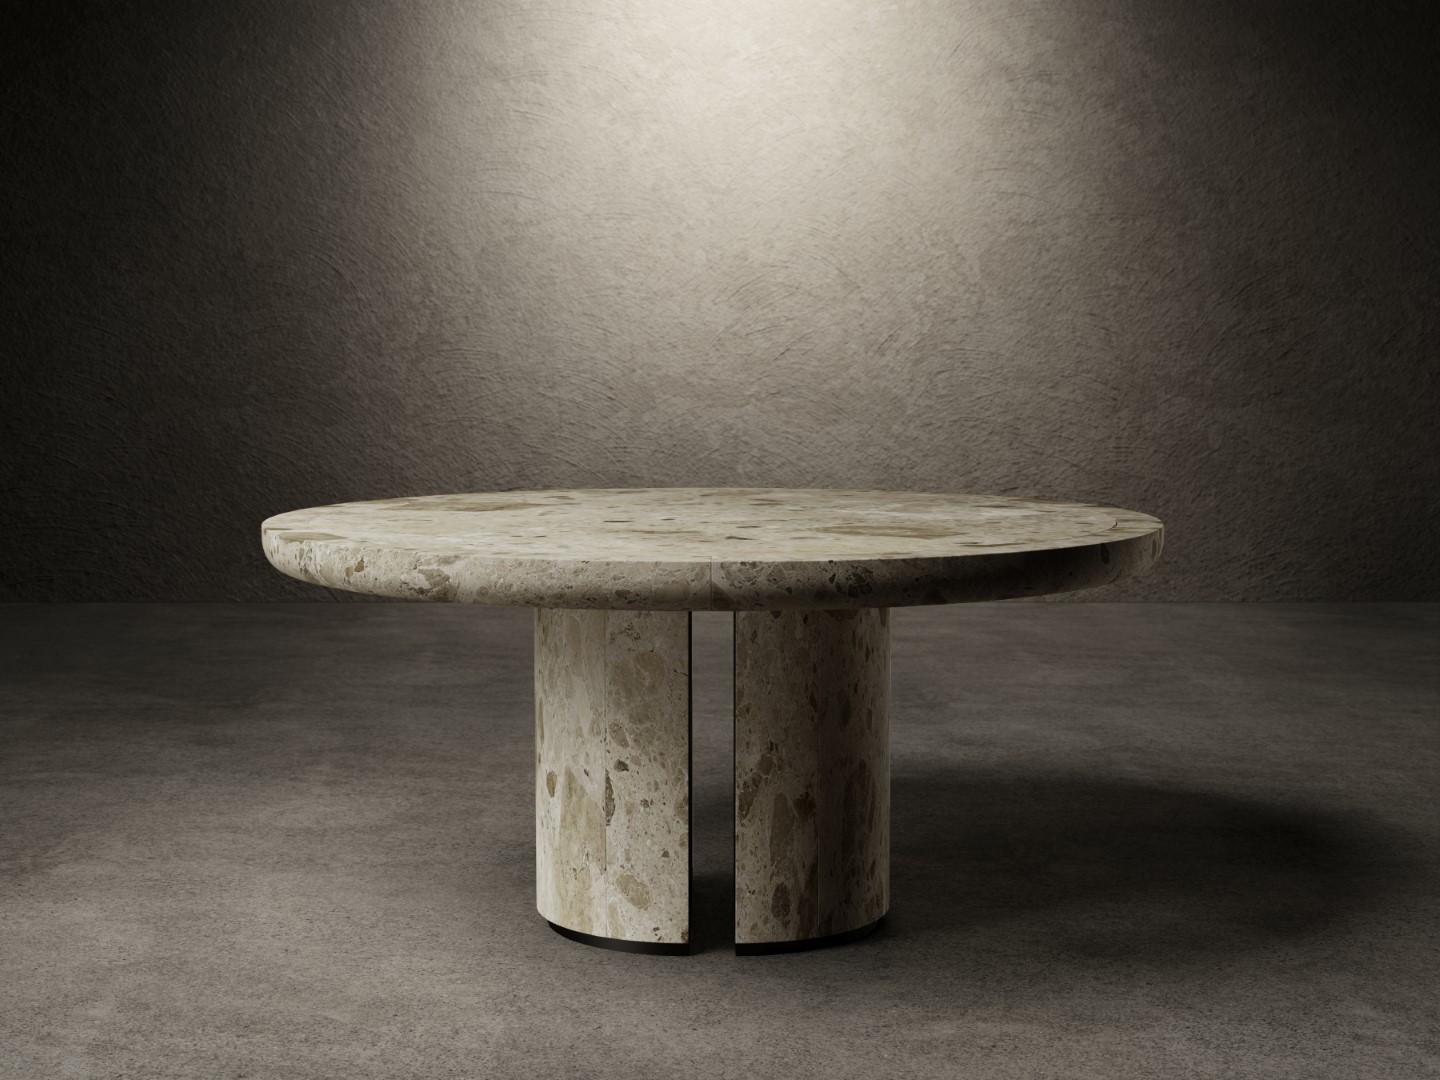 La table de salle à manger For No One a un plateau composé d'une dalle de marbre Ambrosia mat soutenue avec un cadre de 8 cm en marbre massif.
Le plateau est ancré aux deux bases par des plaques de métal noir mat. Chaque base est composée de deux